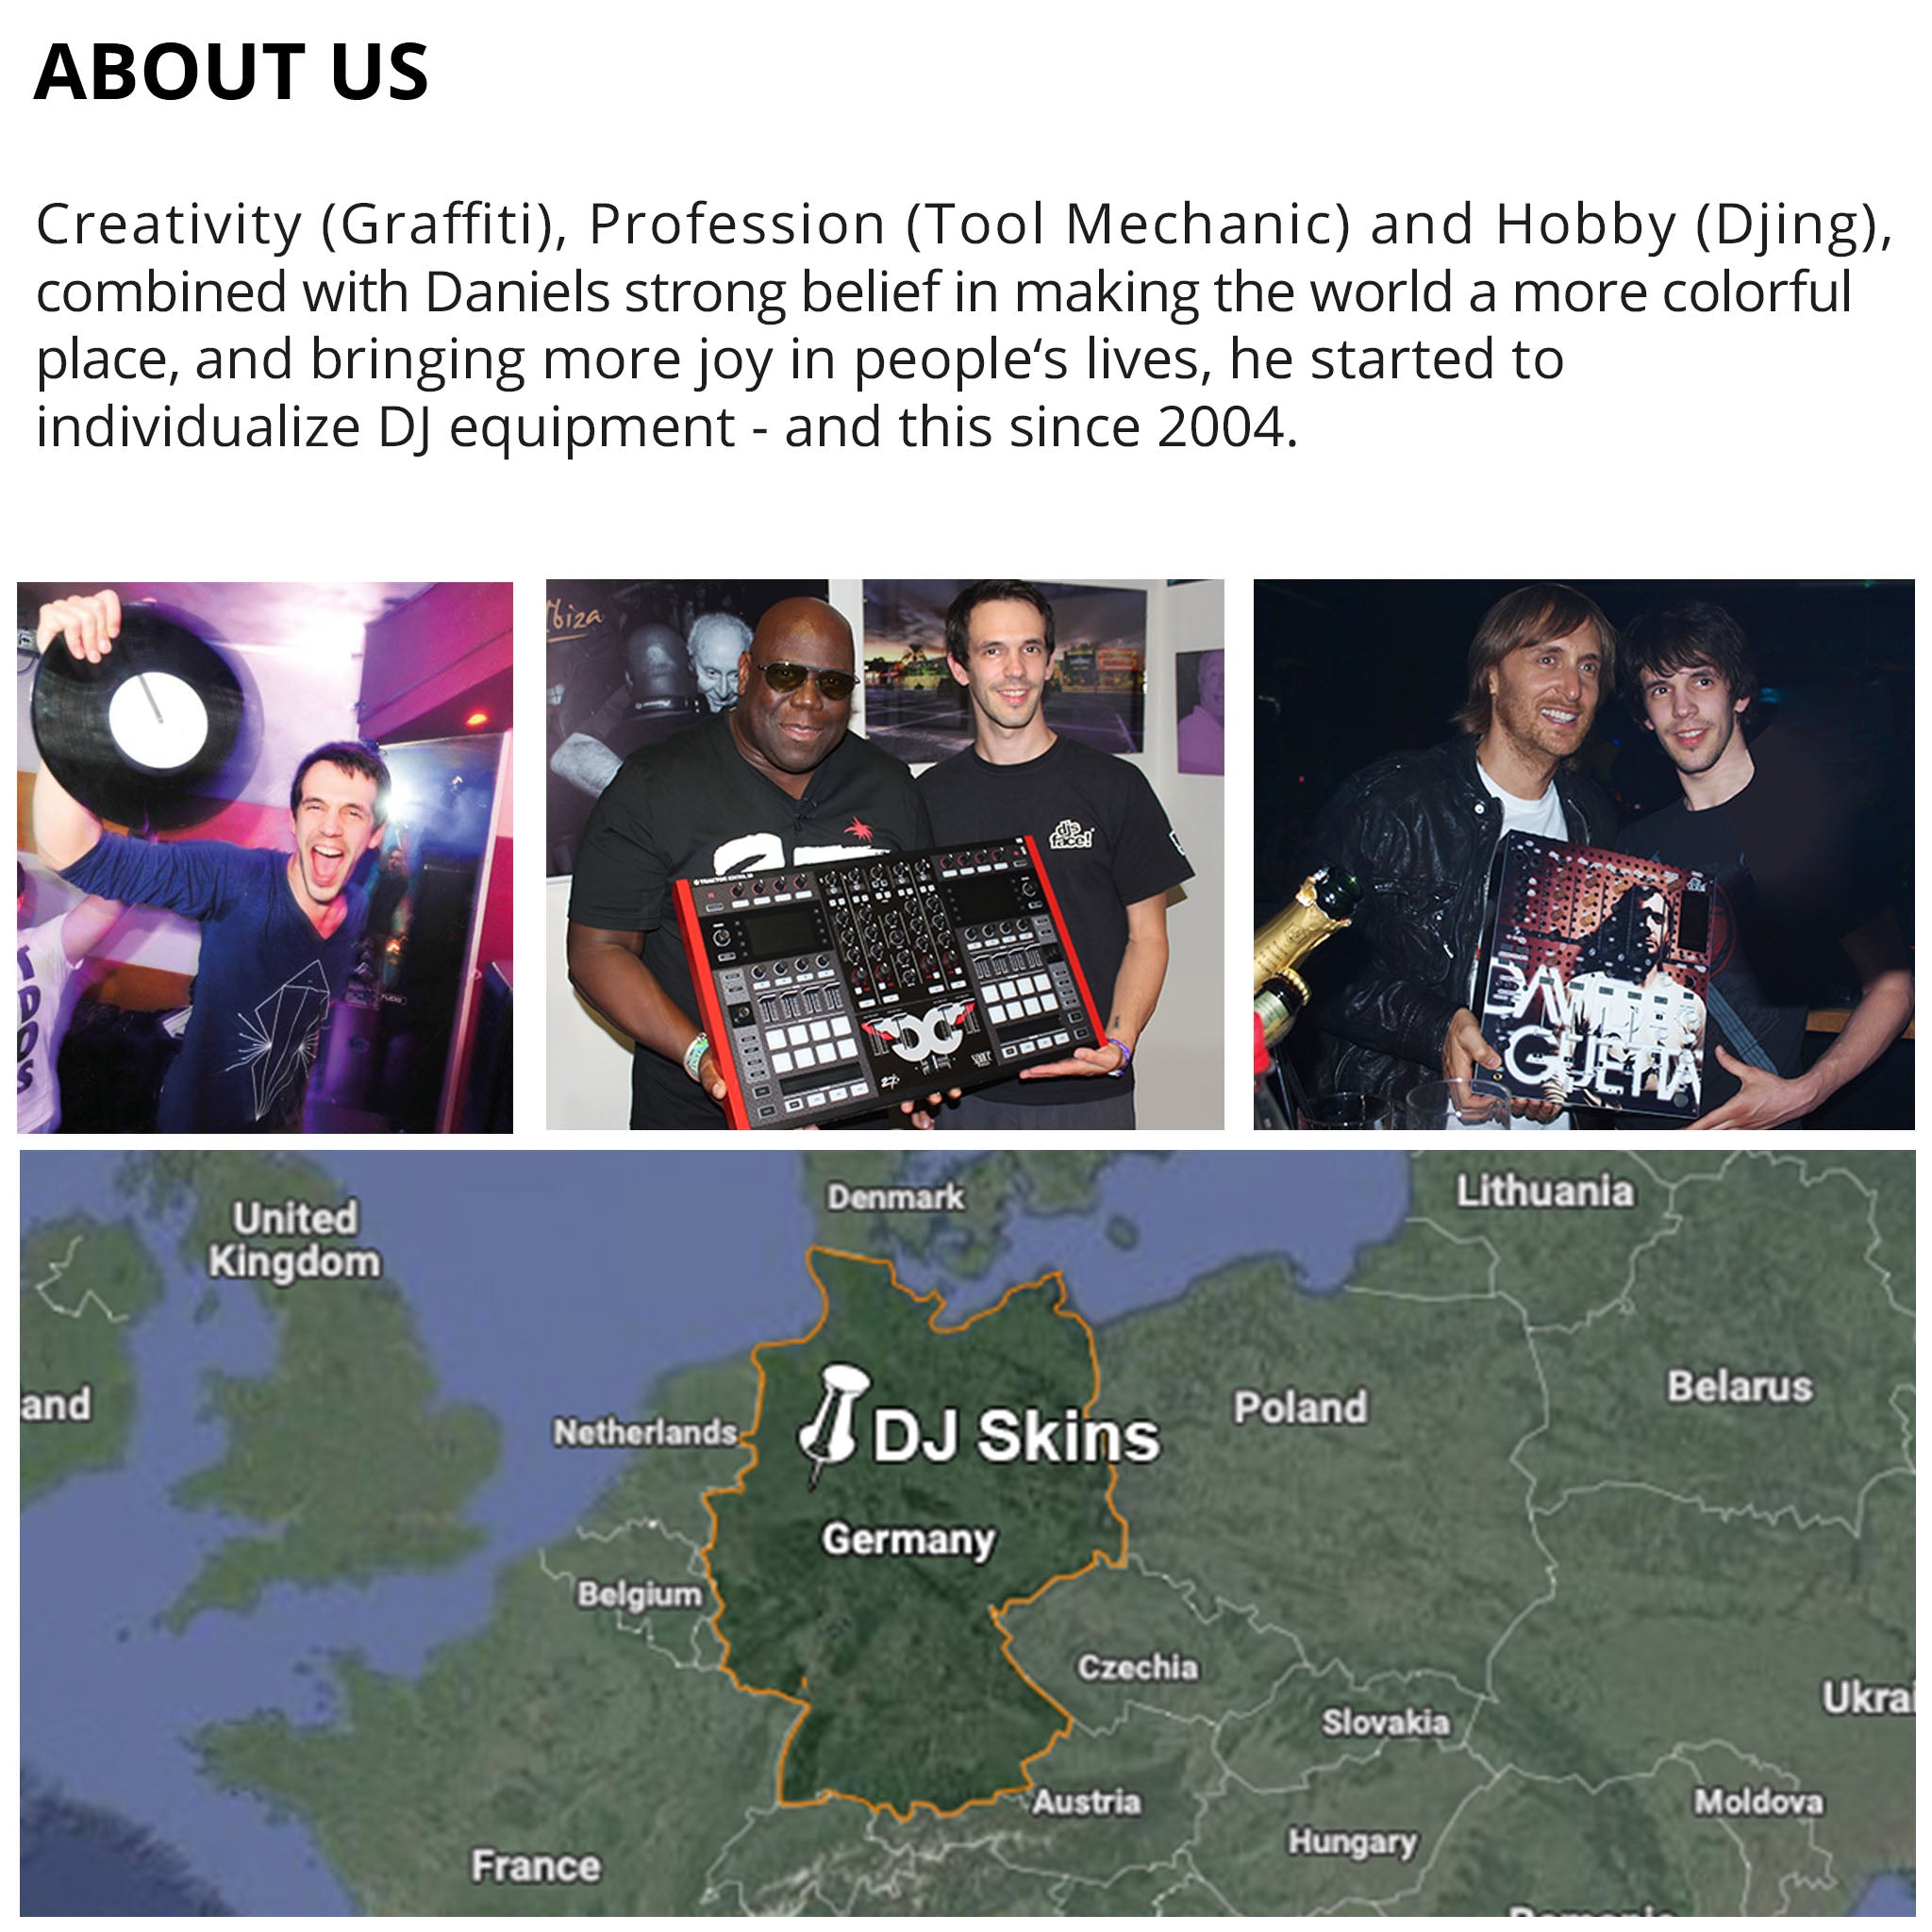 Pioneer DJ CDJ 900 NEXUS Skin Smartiboy